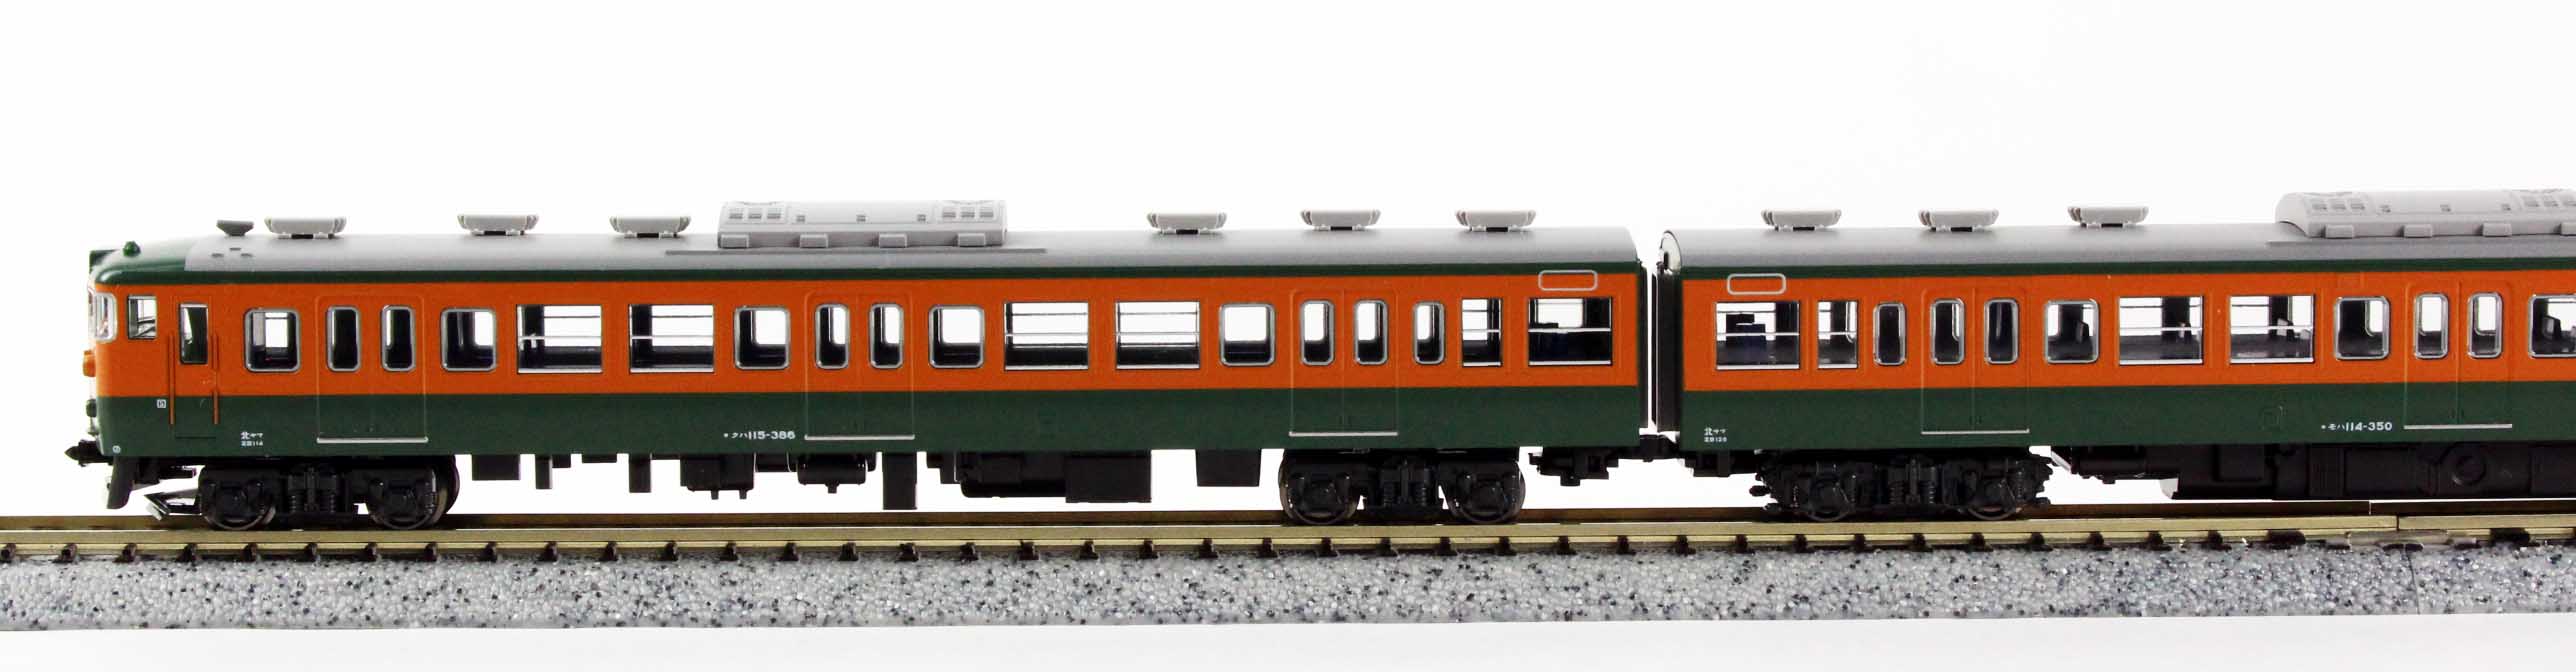 KATO 10-1410 115系300番台 湘南色 4両セット 鉄道模型 Nゲージ 